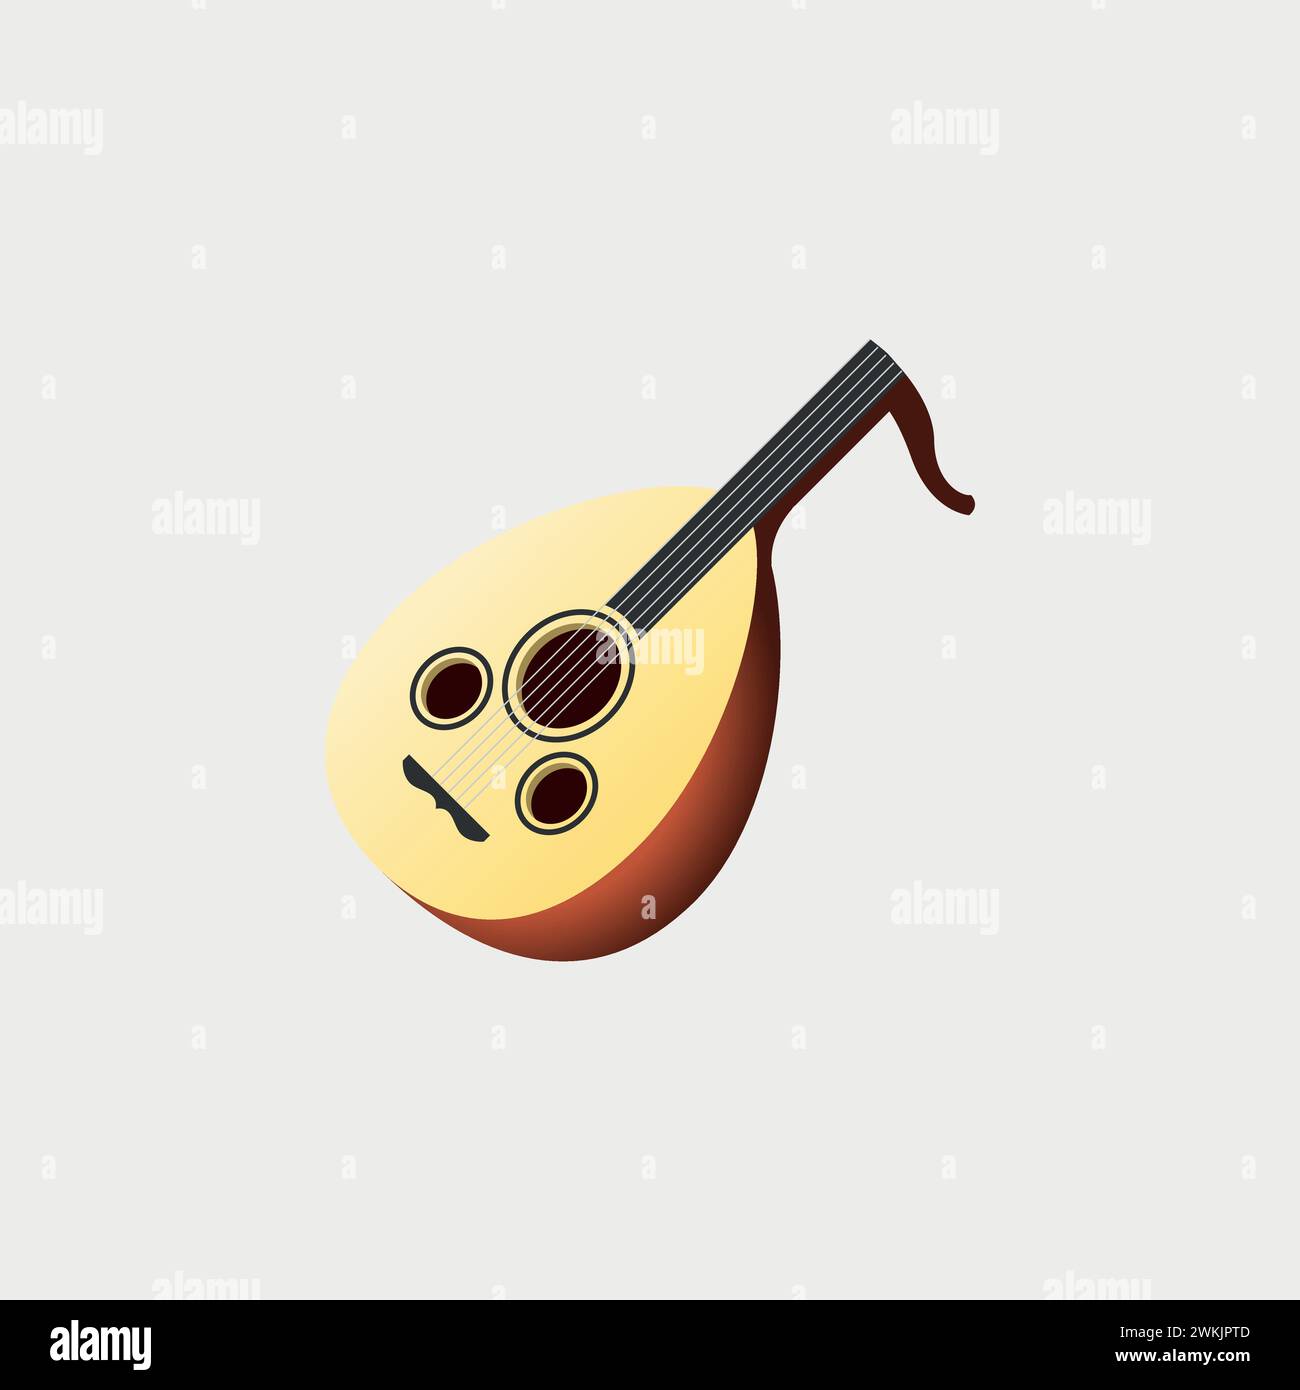 Laute - Oud. Arabisches Orientalisches Musikinstrument Stock Vektor